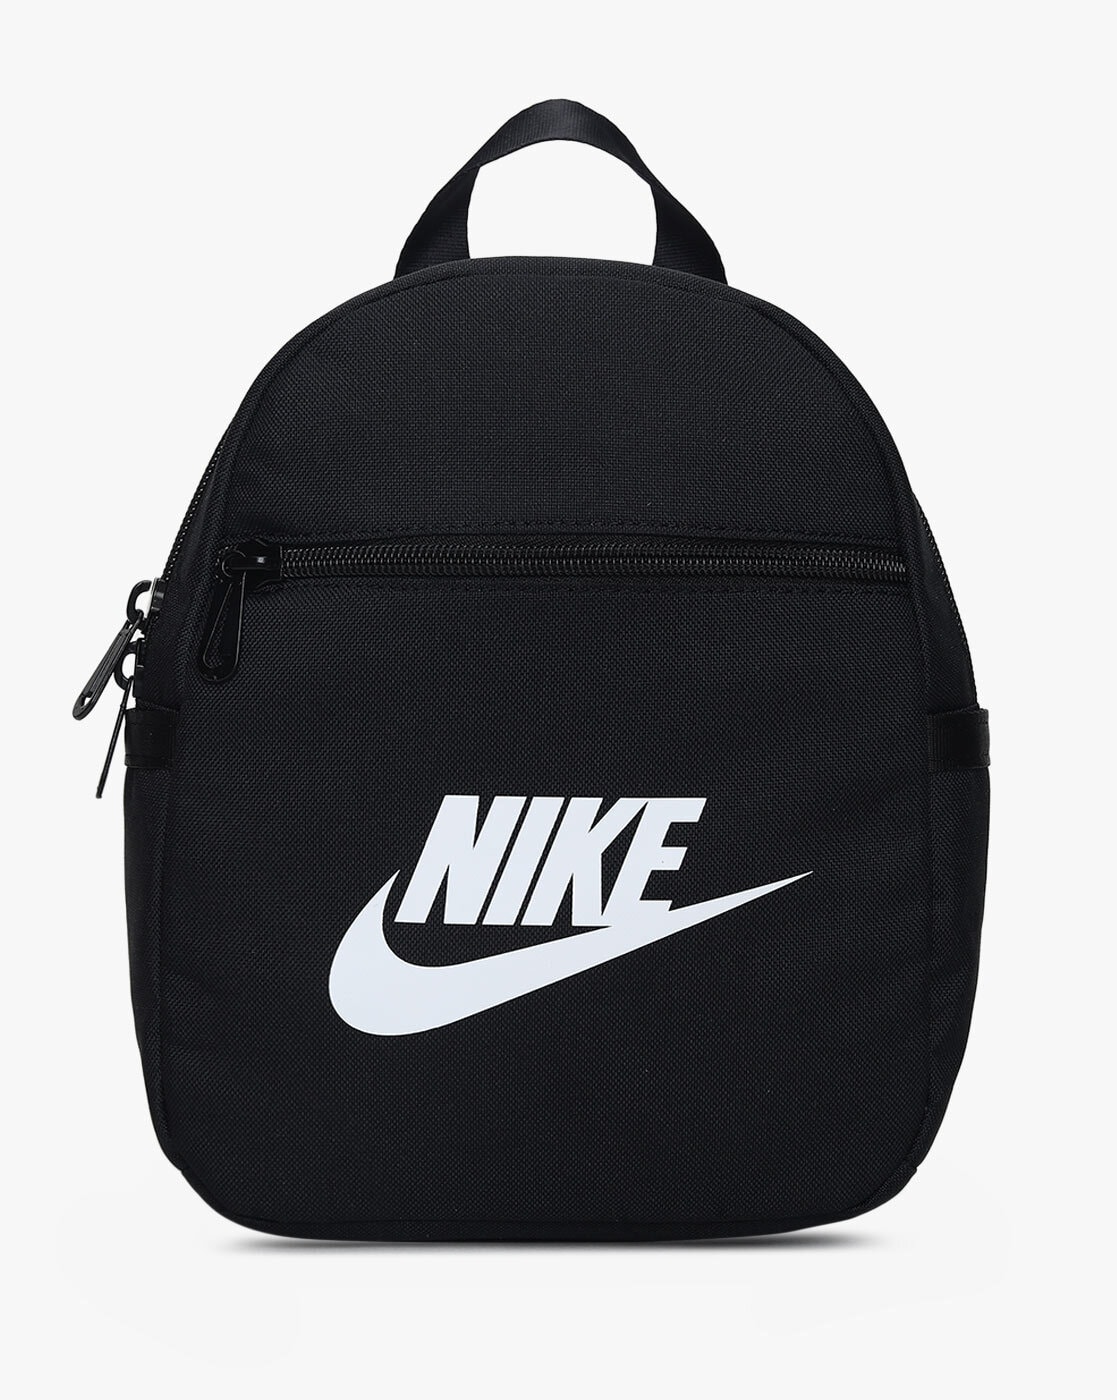 Buy Nike Men's Core Small Items 3.0 Shoulder Bag Online at desertcartINDIA